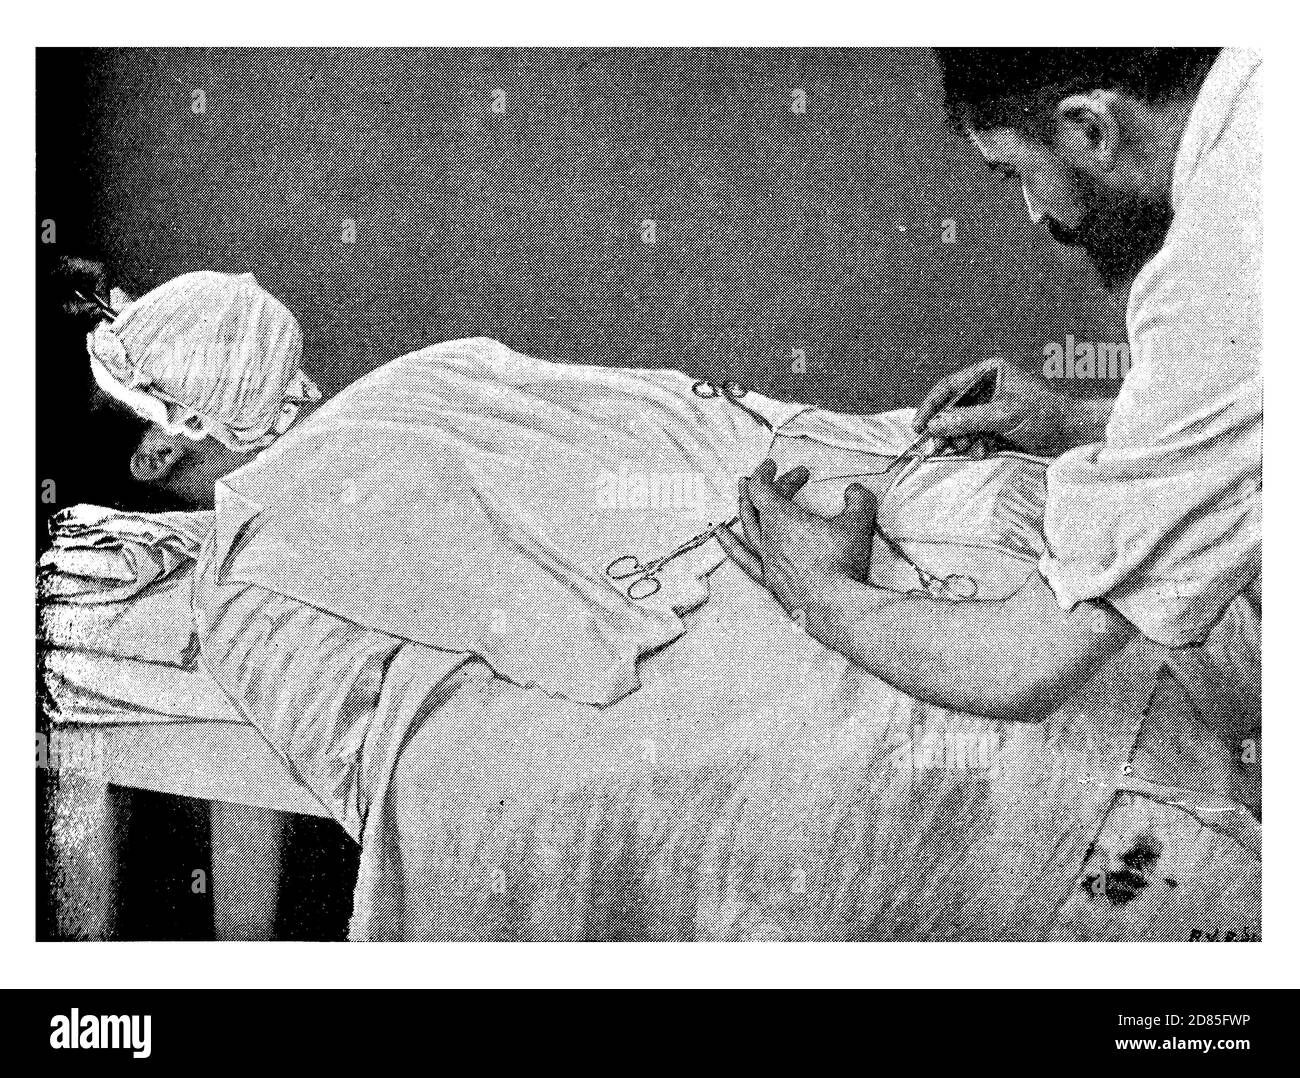 Healthcare and Medicine Vintage Illustration: Chirurgische Entfernung des Blinddarms mit einem offenen Schnitt im Bauch (Laparotomie) Stockfoto